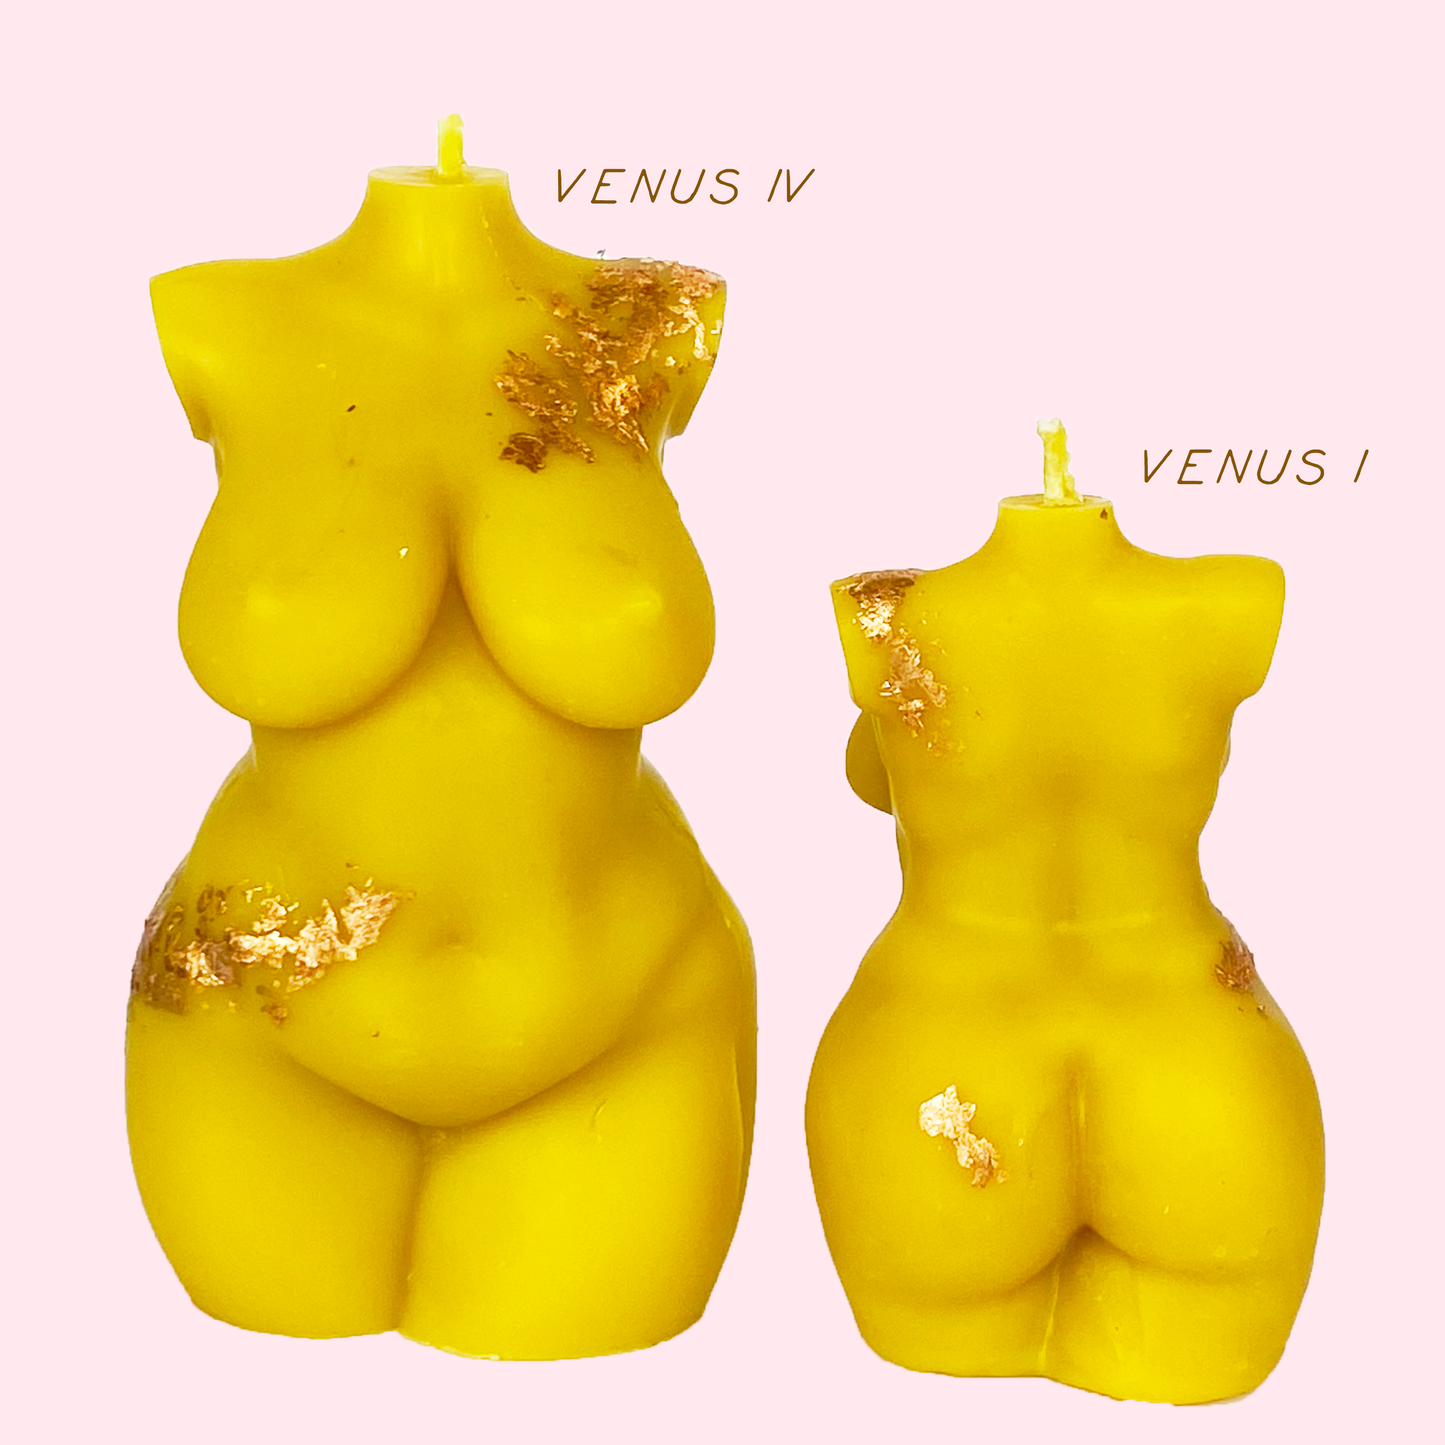 VENUS IV